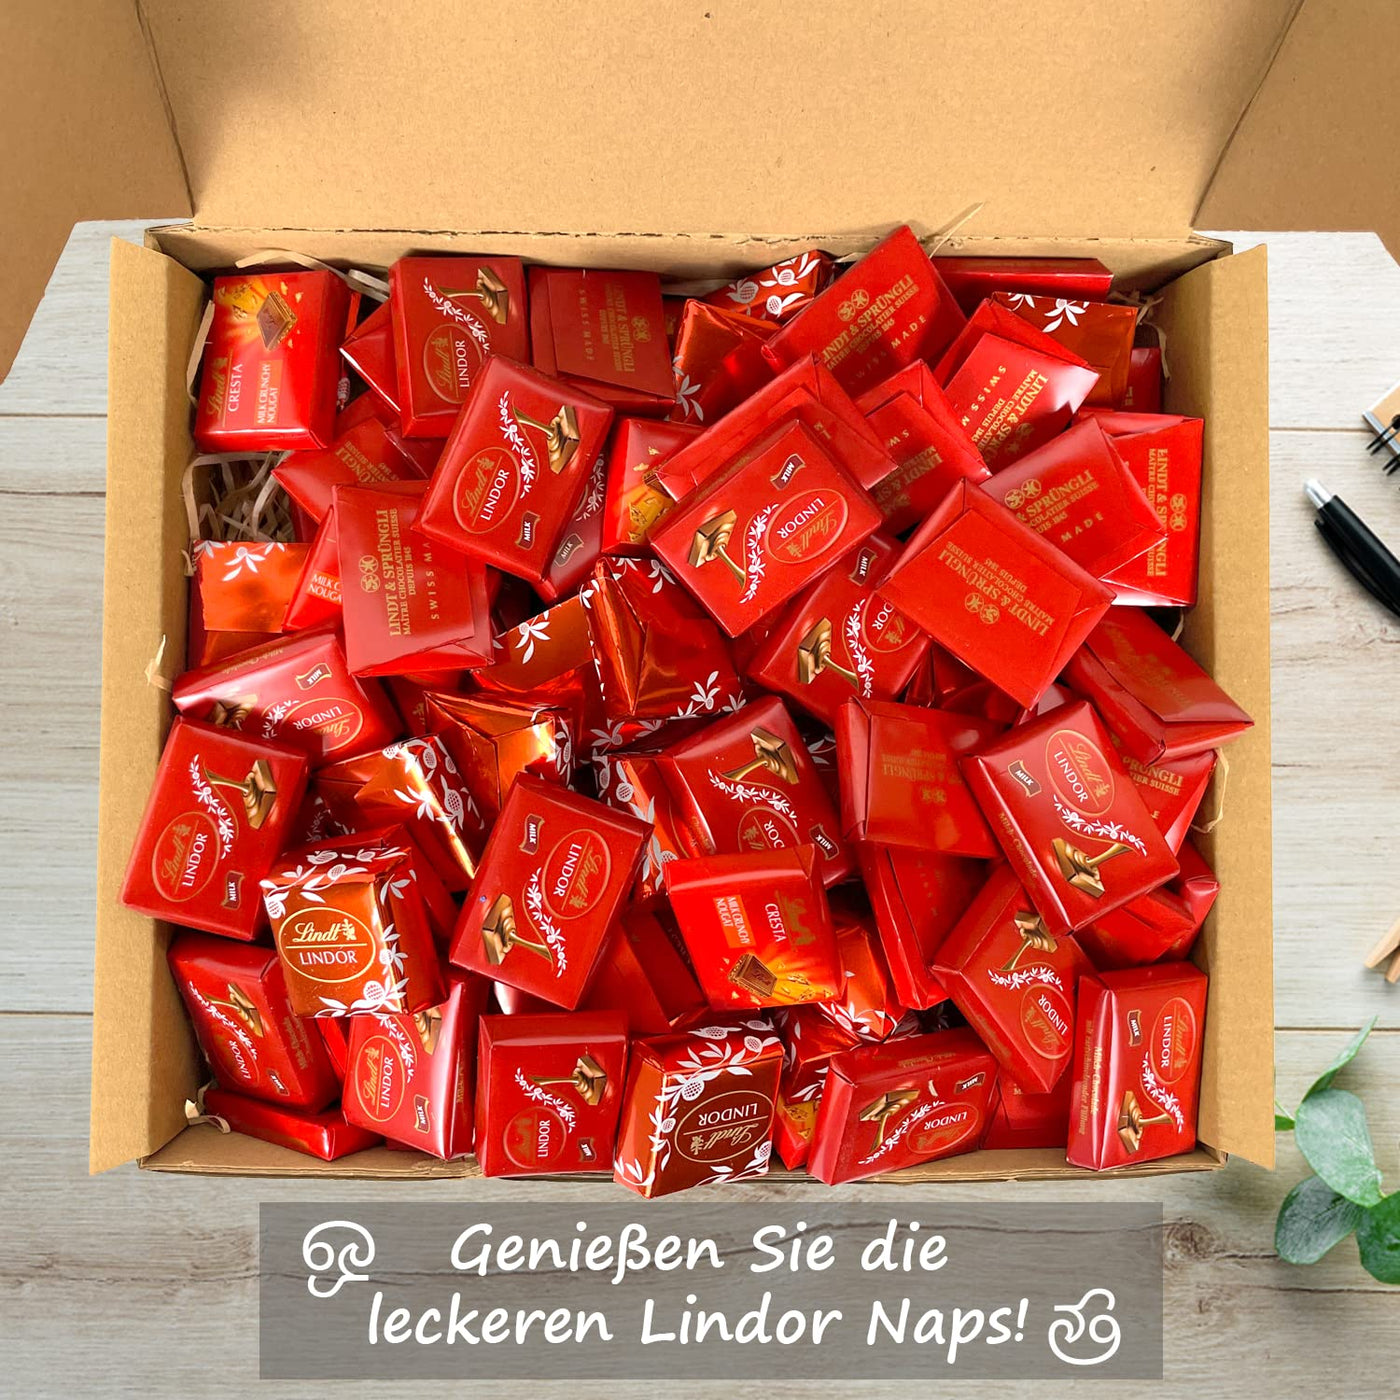 Genusslebenbox mit 1000g Lindt Lindor Naps und Lindt Cresta im Schokoladengenuss-Mix